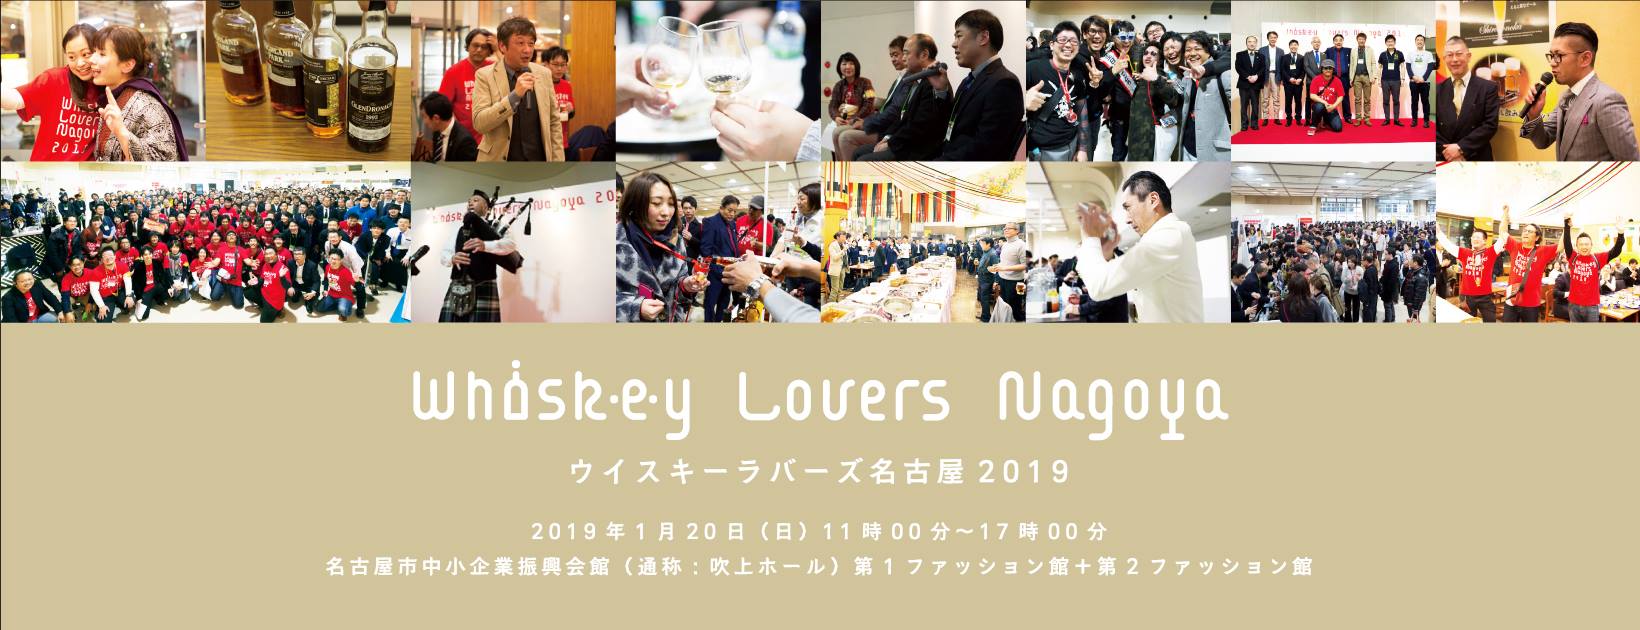 nagoya whisky festival affiche